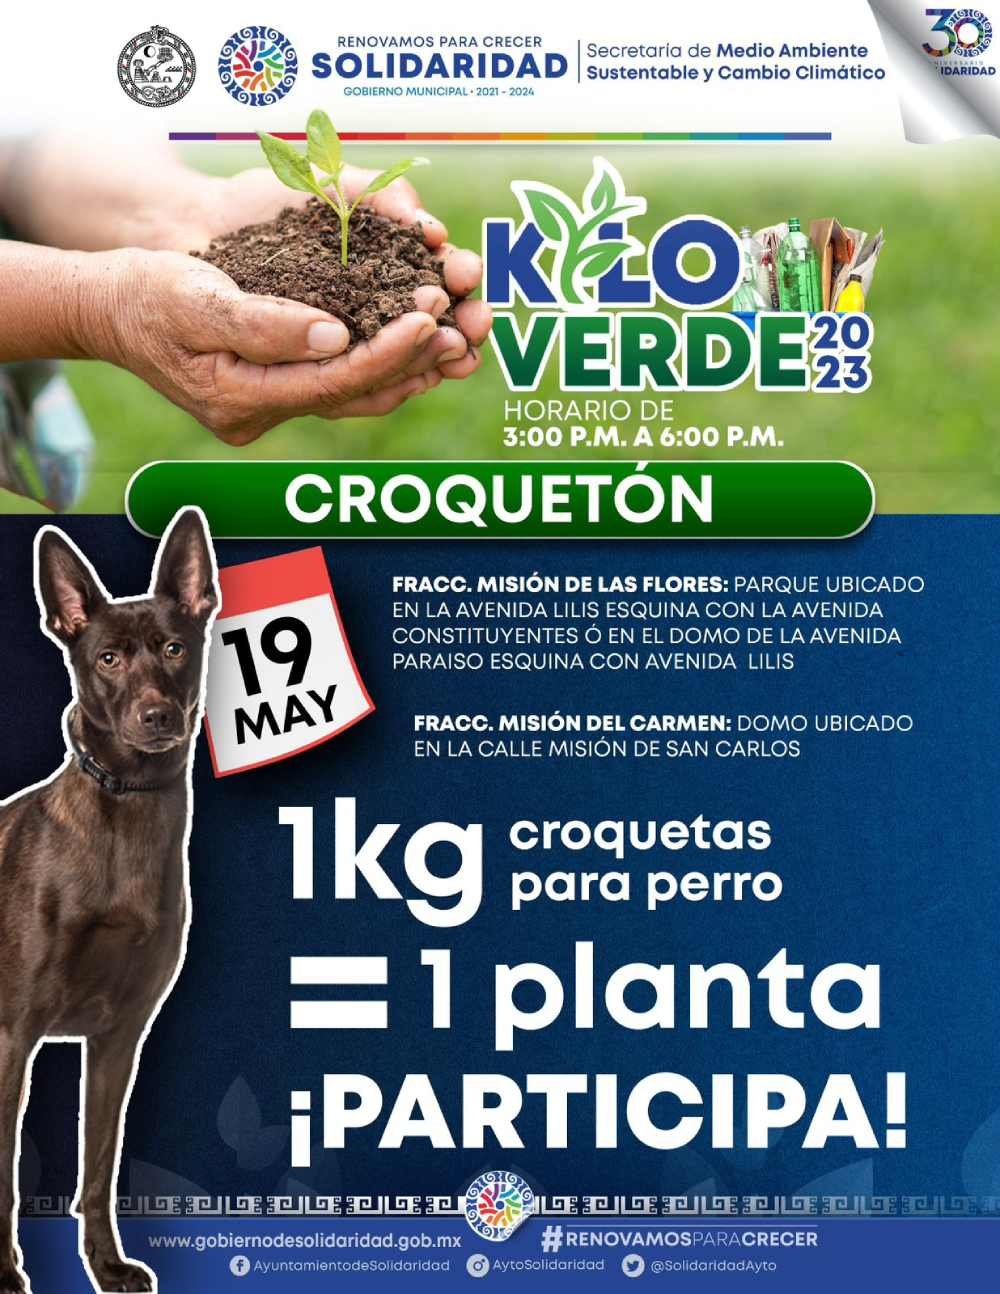 Invitan a participar en “Kilo verde” y “Croquetón”